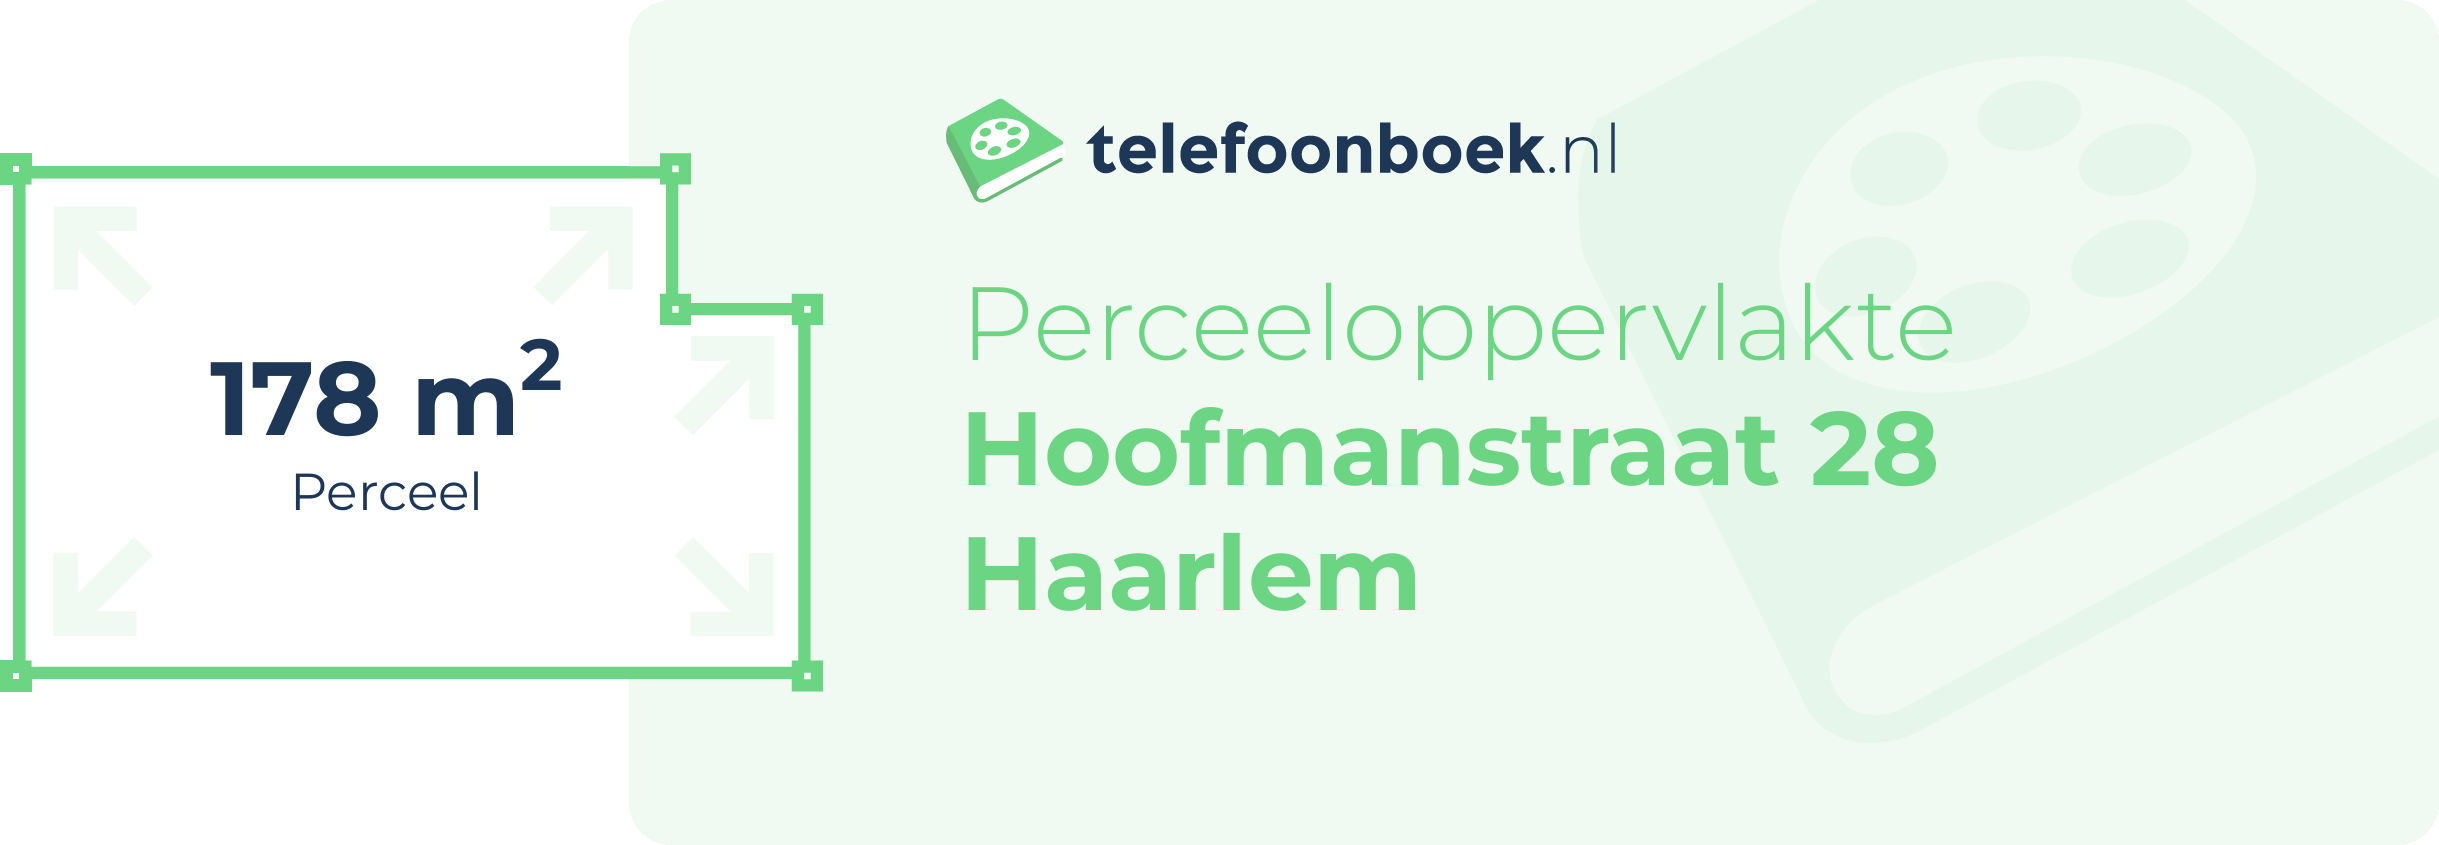 Perceeloppervlakte Hoofmanstraat 28 Haarlem